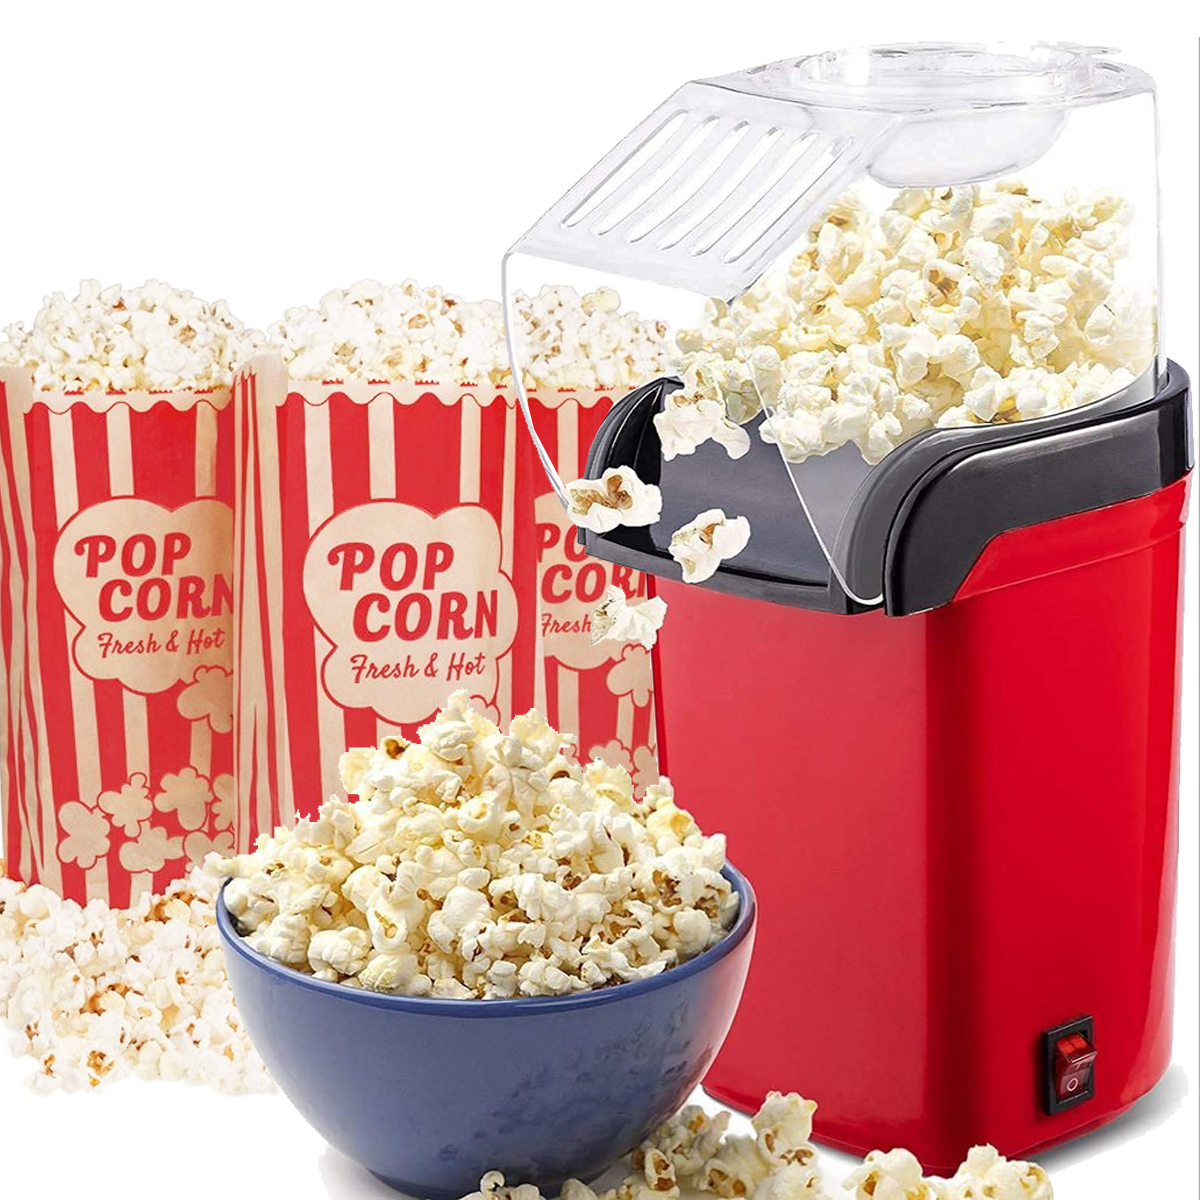 Popcornmaschine 1200 Watt Retro Popcorn Maschine Popcorn-Maschine Pop Corn Maker